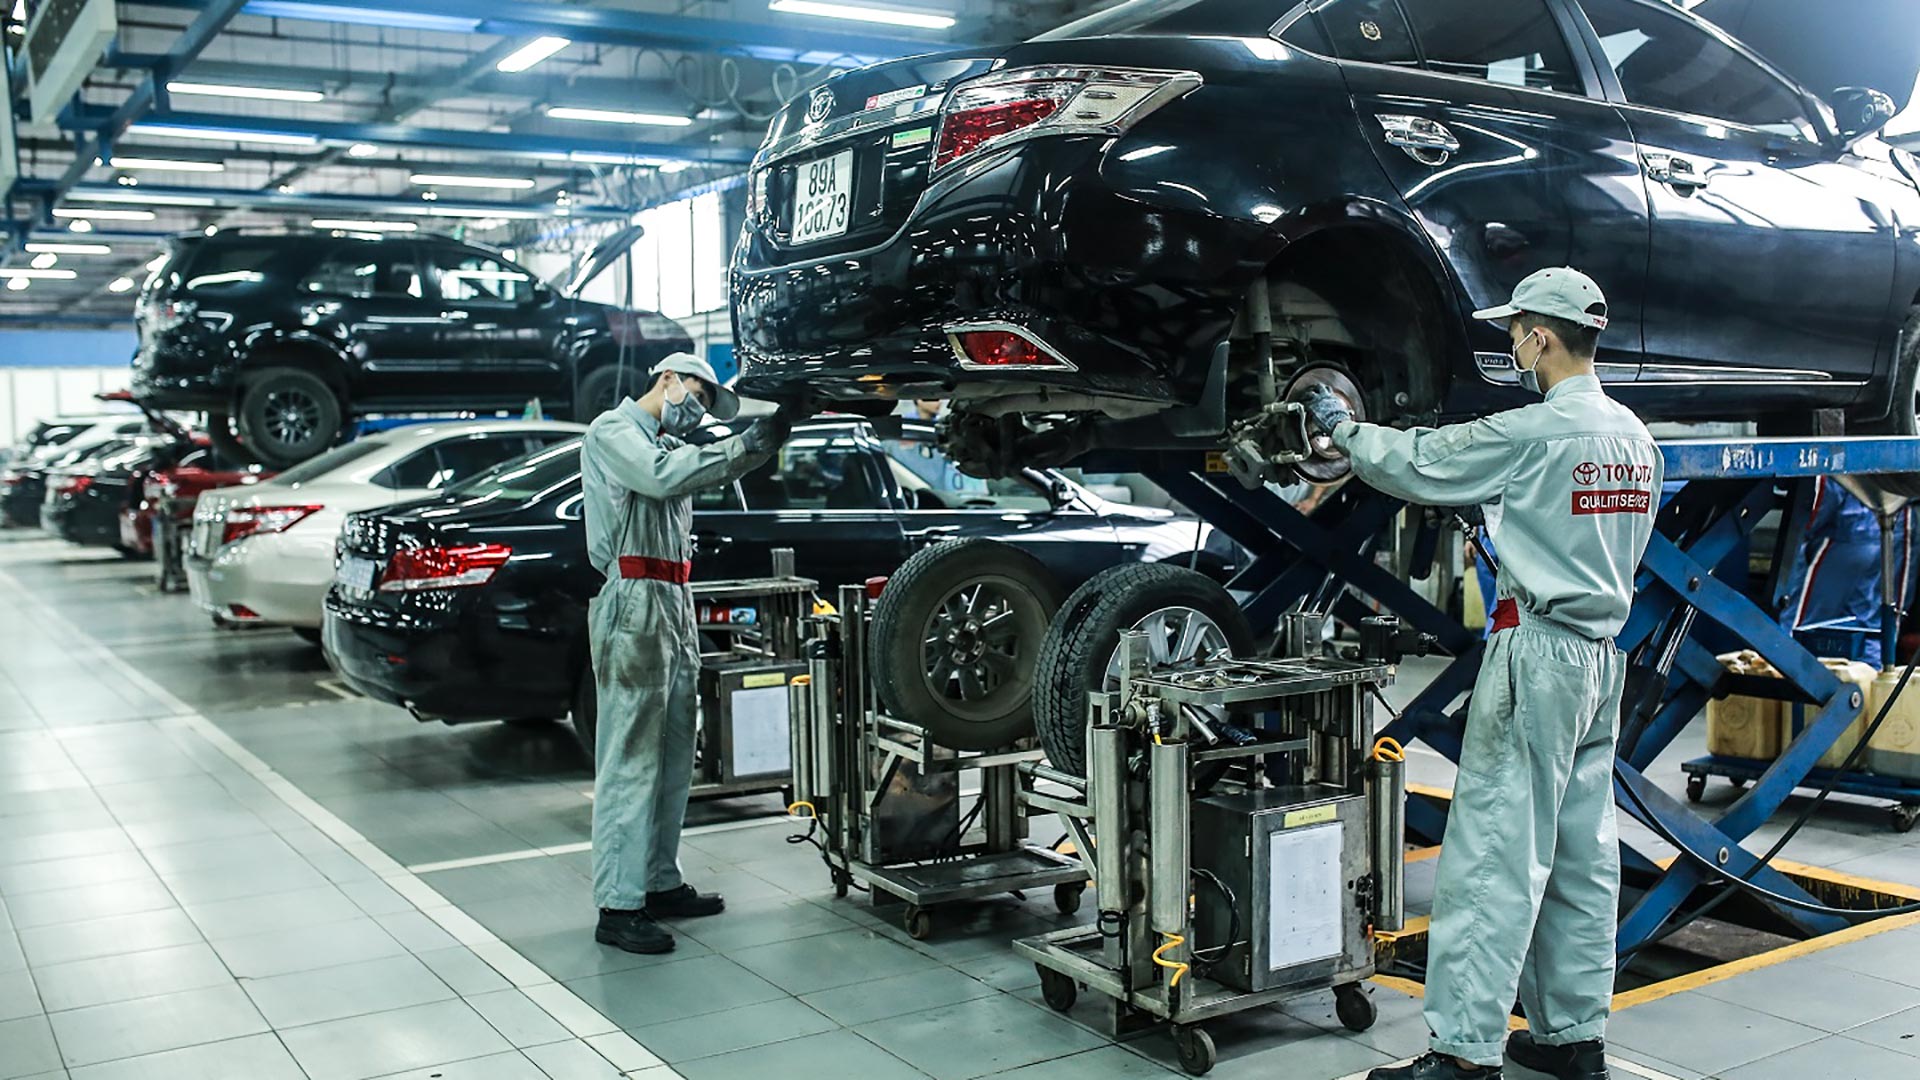 Toyota Việt Nam hỗ trợ đồng bào  miền Trung hơn 1,5 tỷ đồng